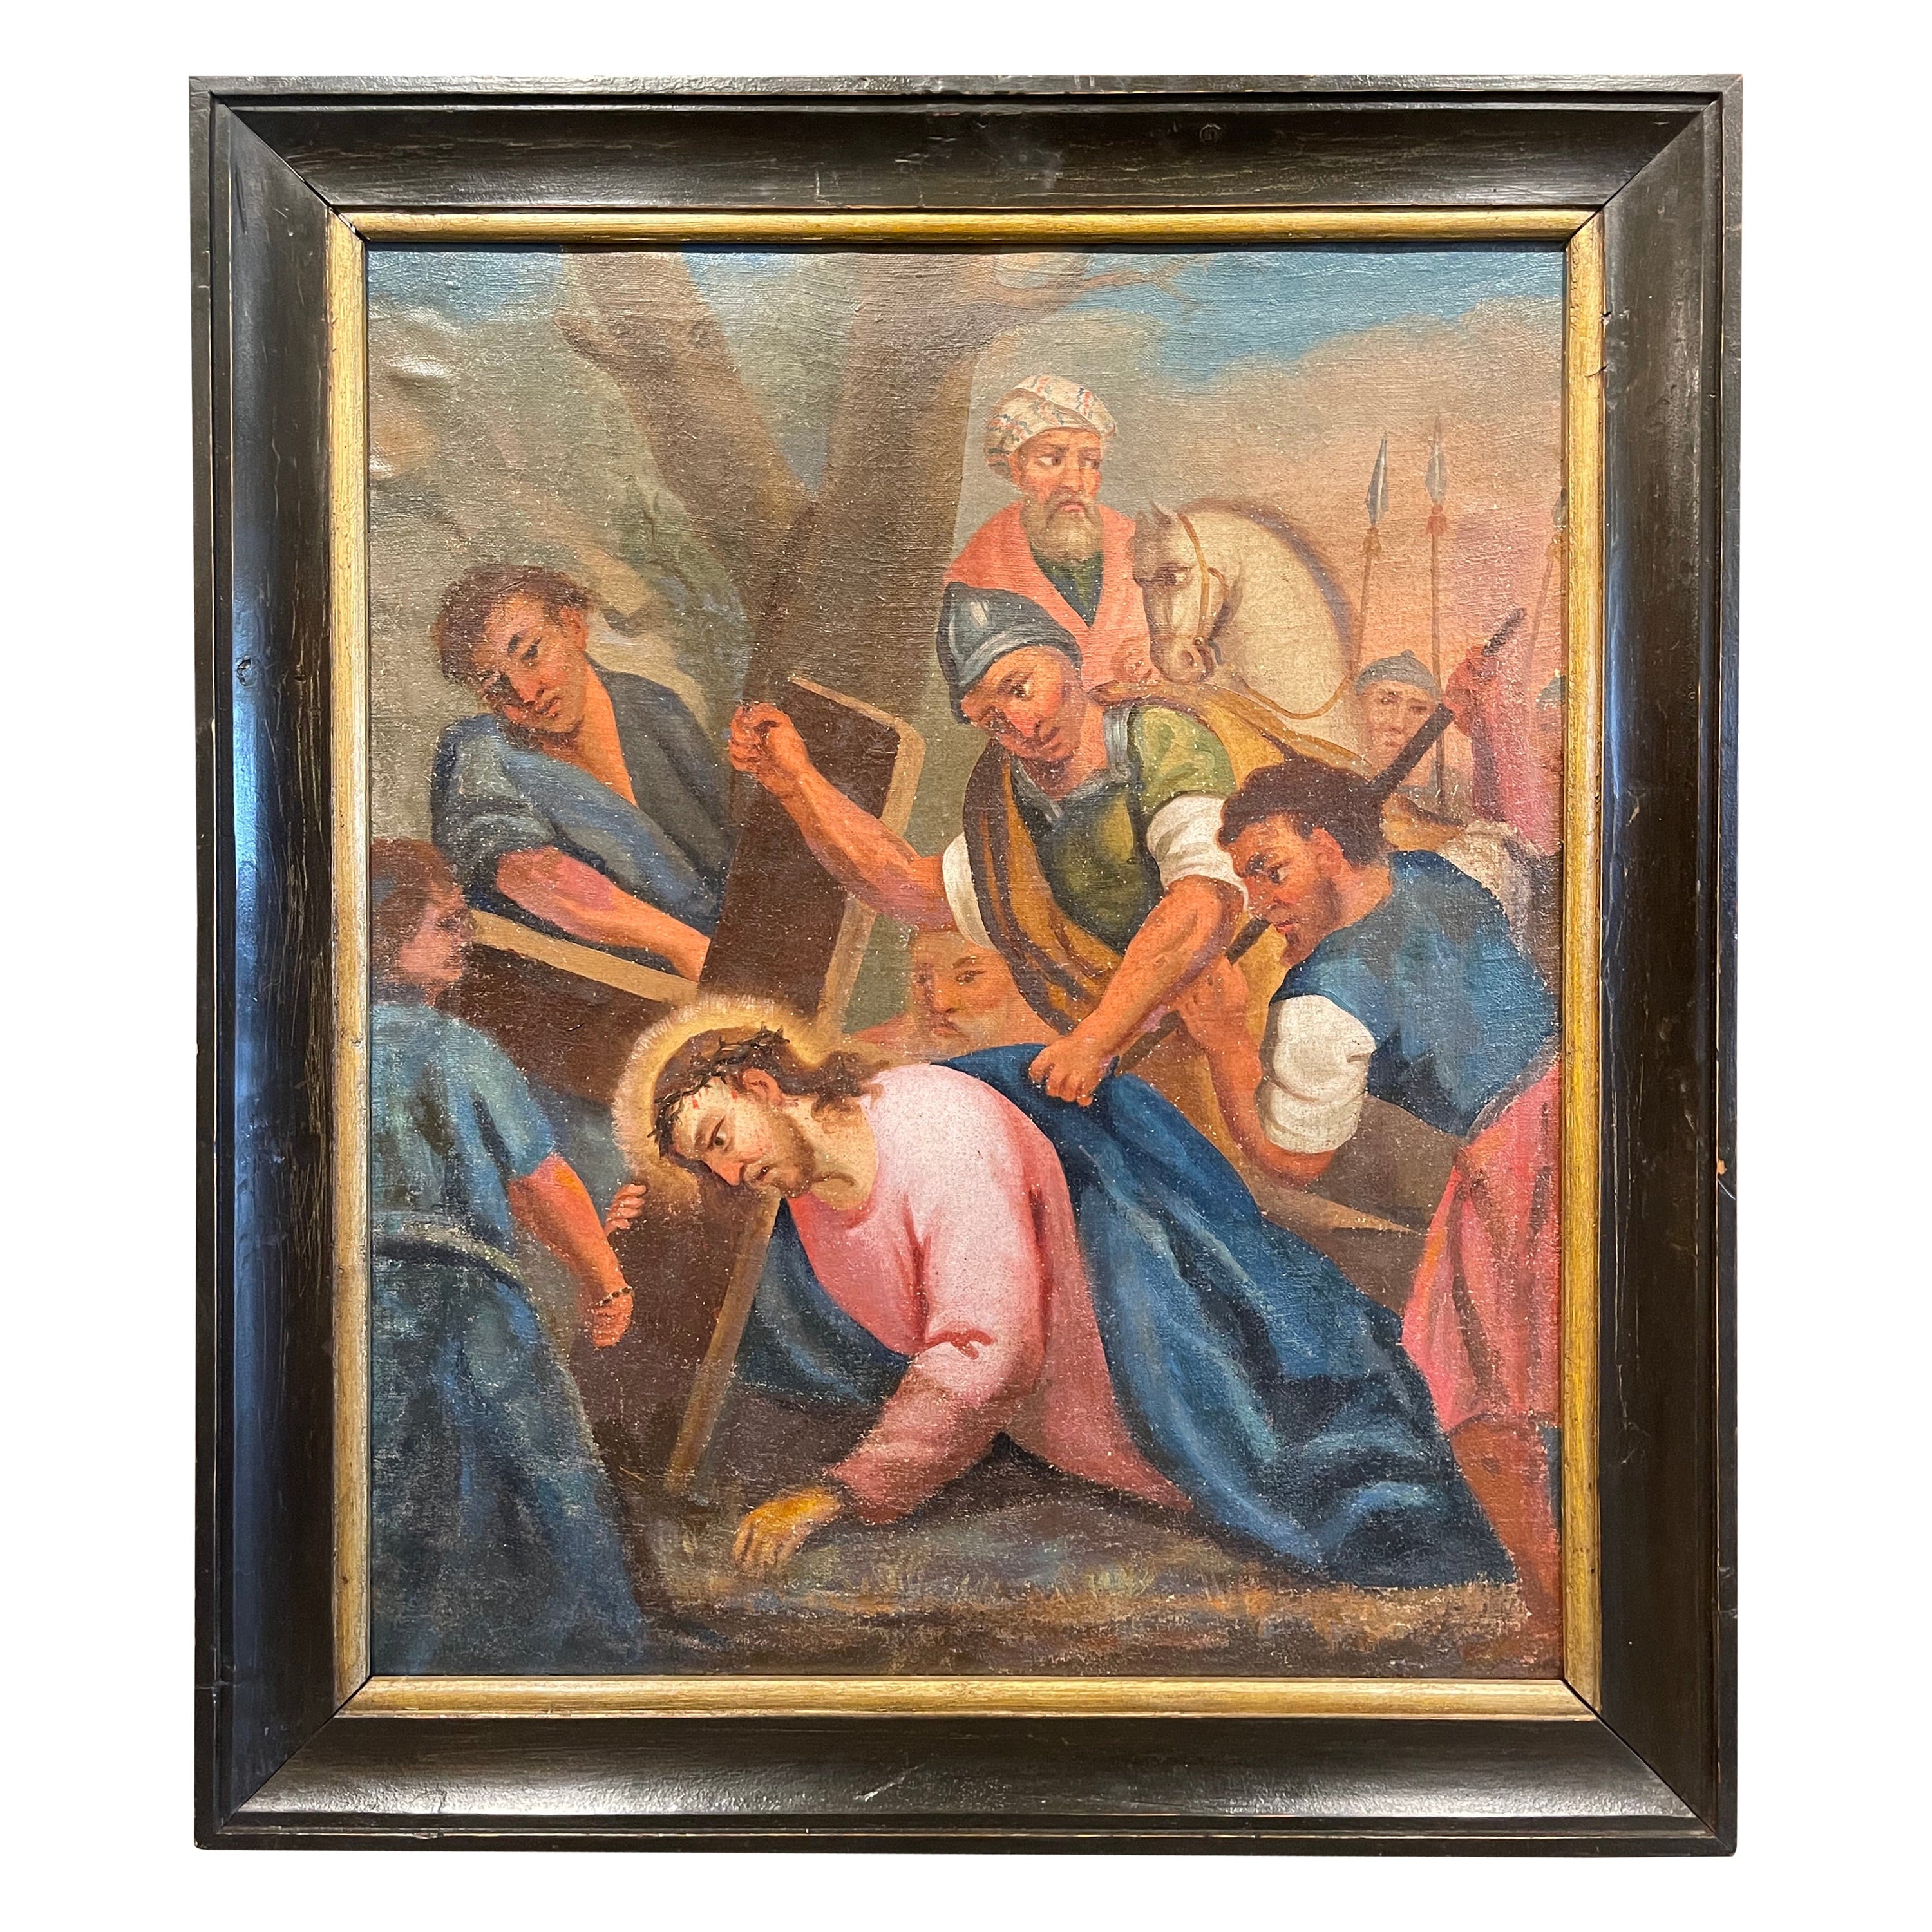 Französisches Ölgemälde auf Leinwand, 18. Jahrhundert, Gemälde „Der dritte Station des Kreuzes“   